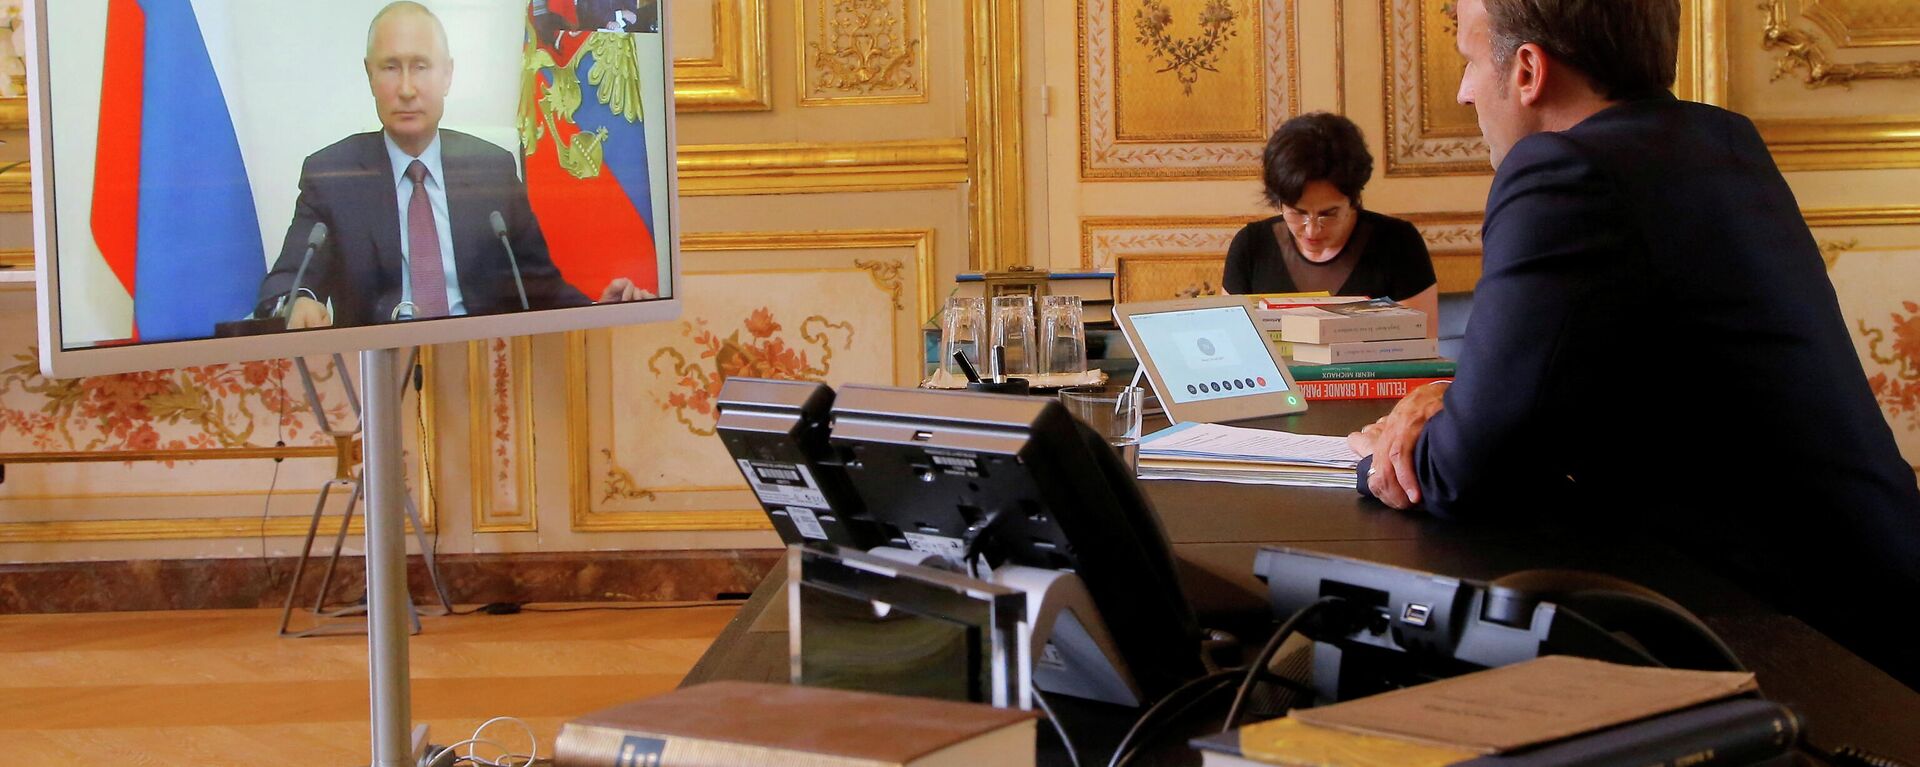 O presidente francês Emmanuel Macron conversa com o presidente russo Vladimir Putin durante videoconferência no Palácio Elysée em Paris, França, 26 de junho de 2020 - Sputnik Brasil, 1920, 12.02.2022